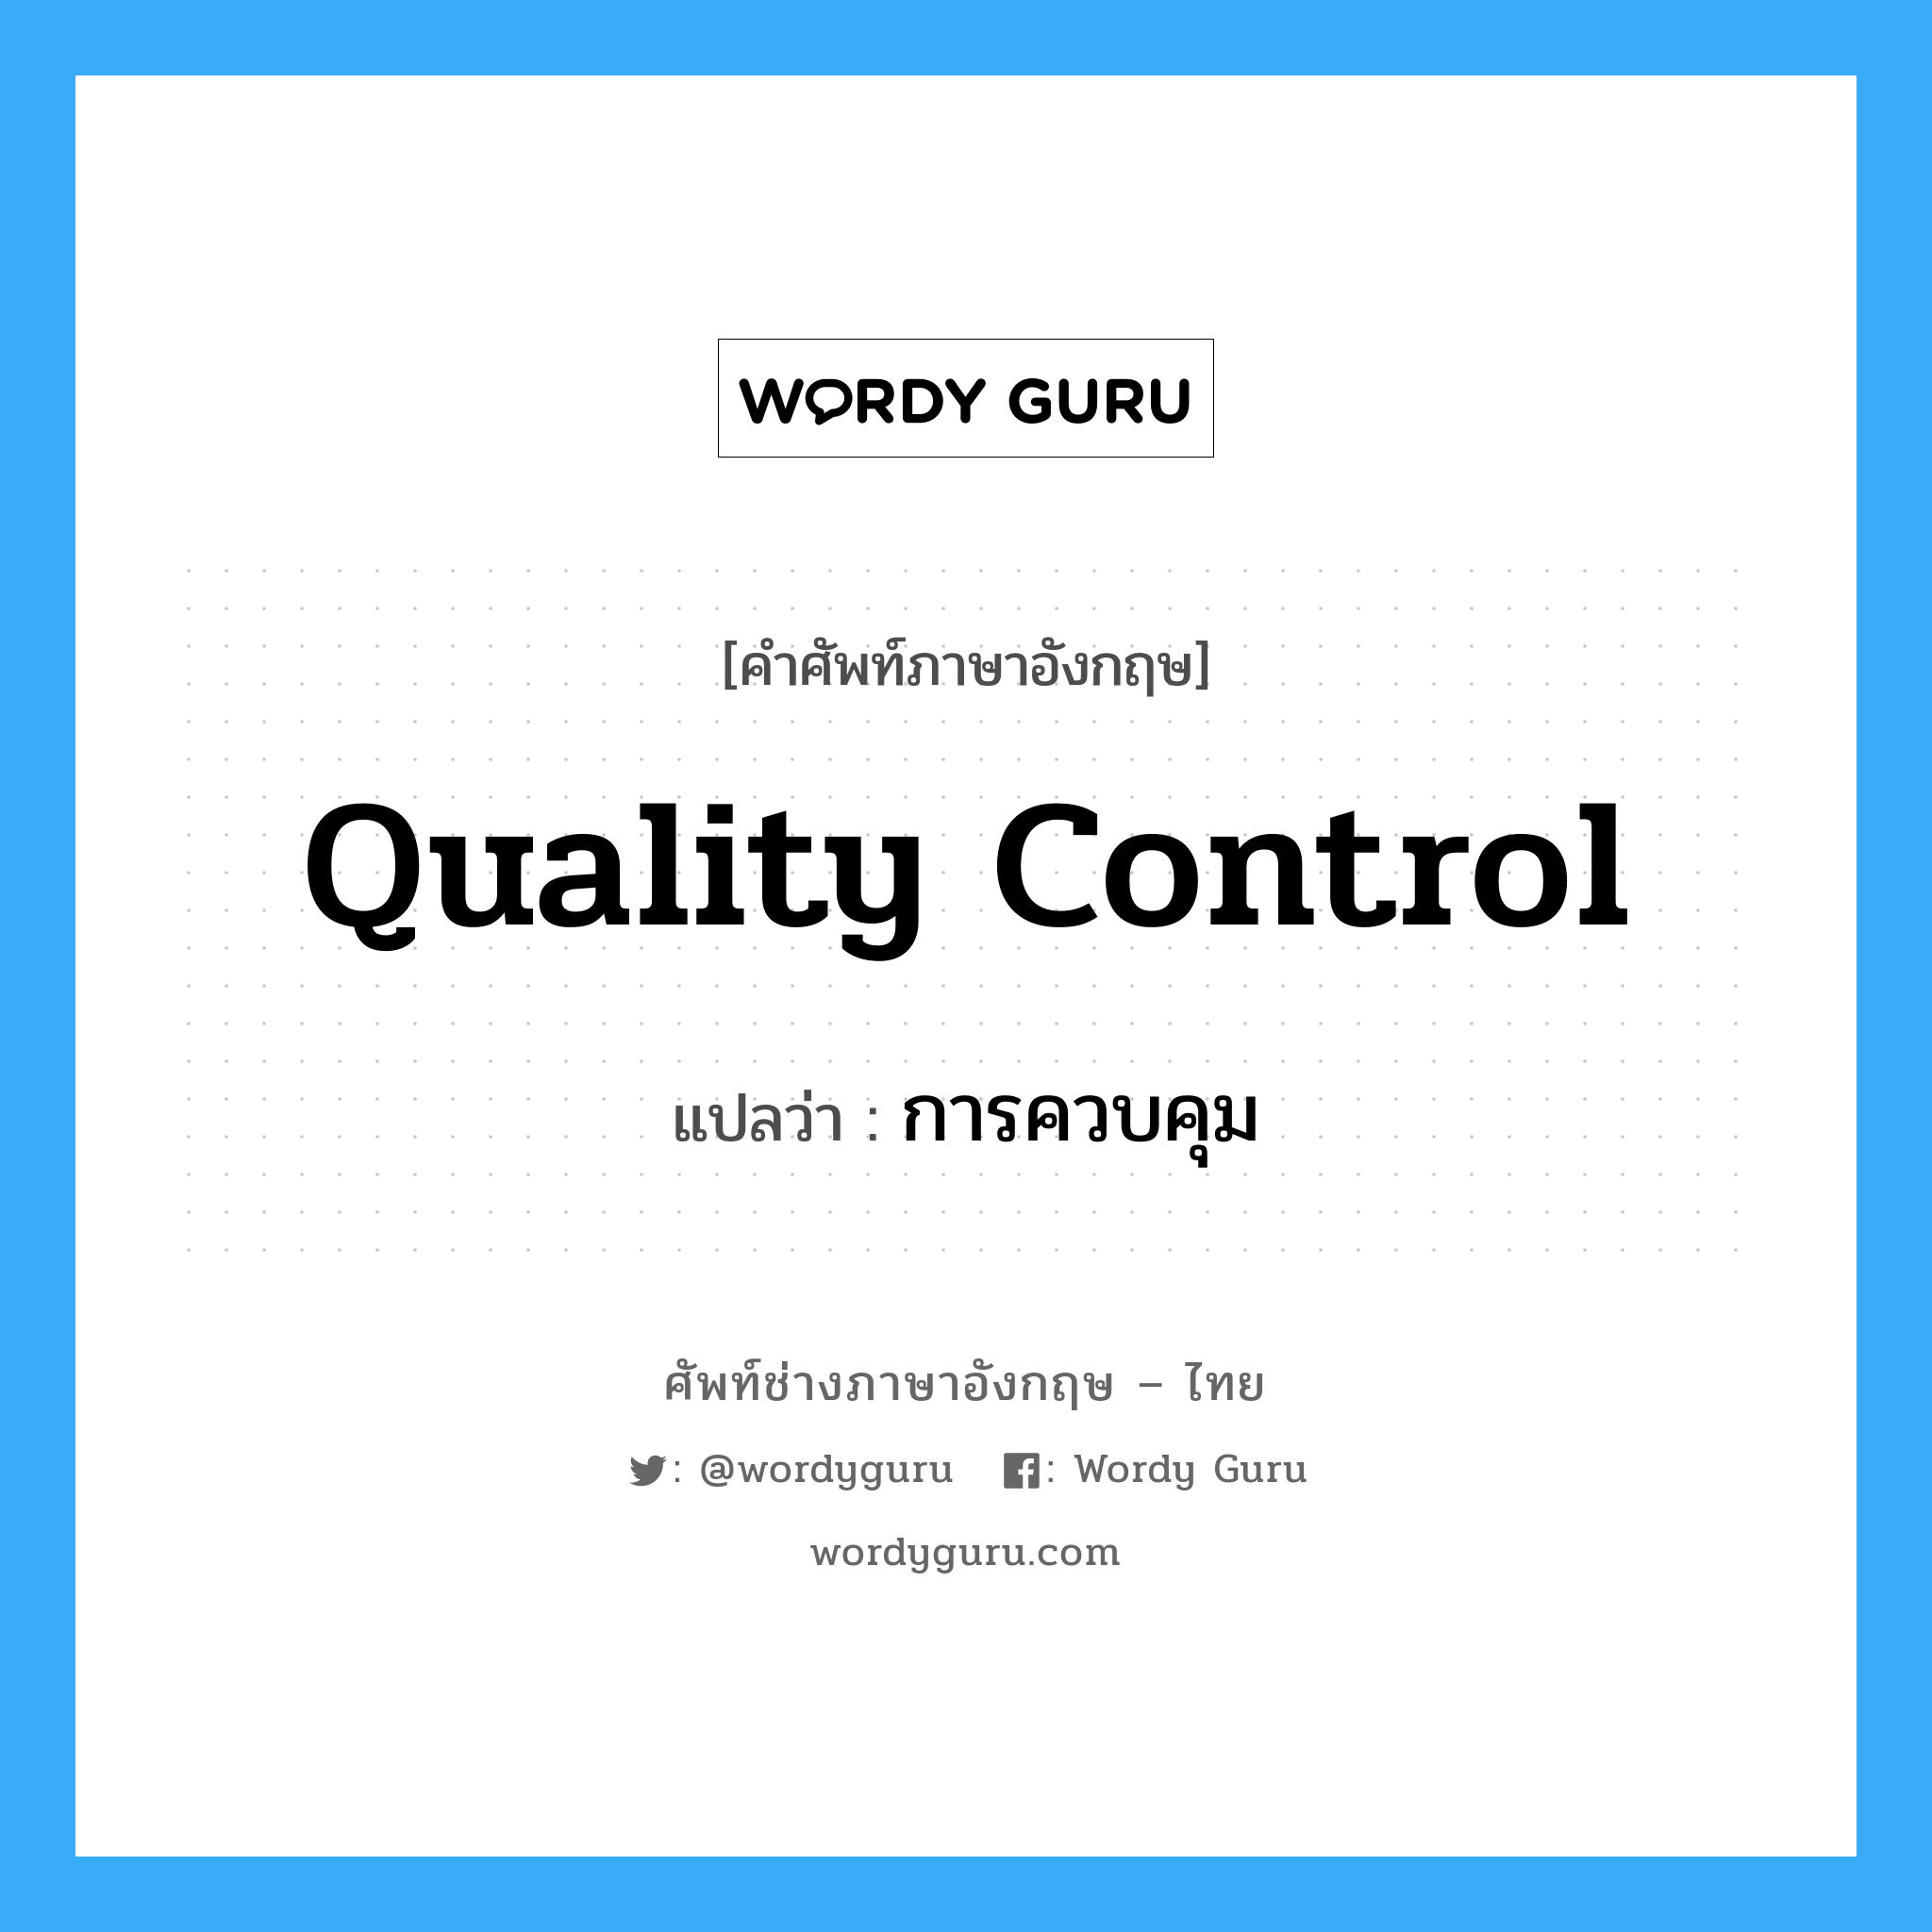 การควบคุม ภาษาอังกฤษ?, คำศัพท์ช่างภาษาอังกฤษ - ไทย การควบคุม คำศัพท์ภาษาอังกฤษ การควบคุม แปลว่า quality control